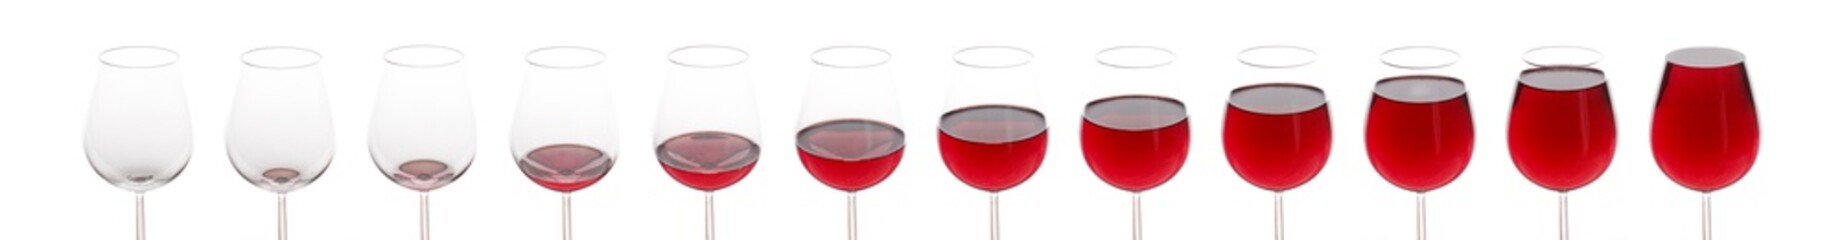 Ein leeres Glas wird gefüllt mit Rotwein - lange Collage